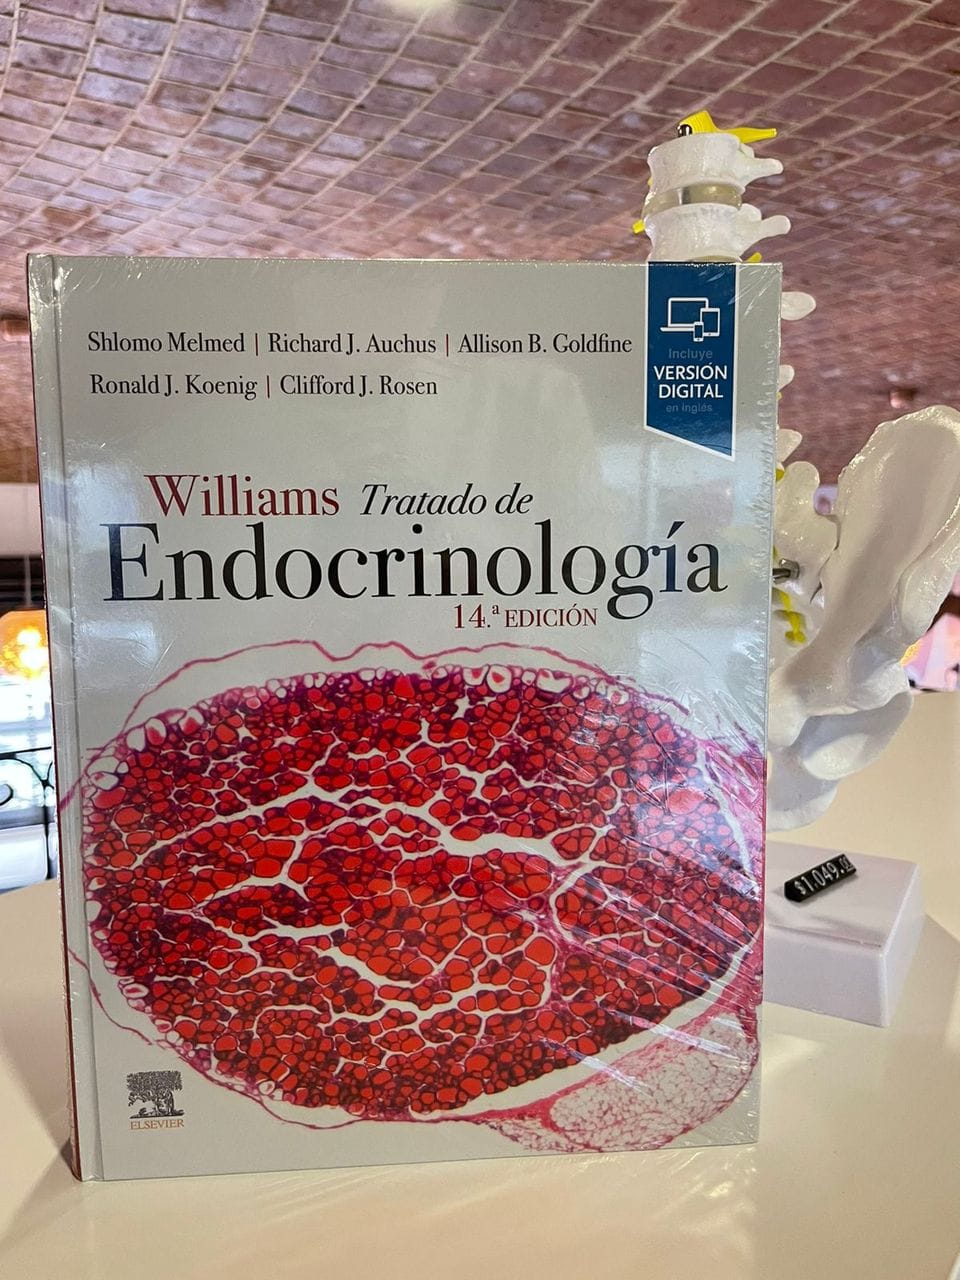 Explorando los fundamentos de la endocrinología: Un recorrido por Williams, Tratado de Endocrinología de Shlomo Melmed